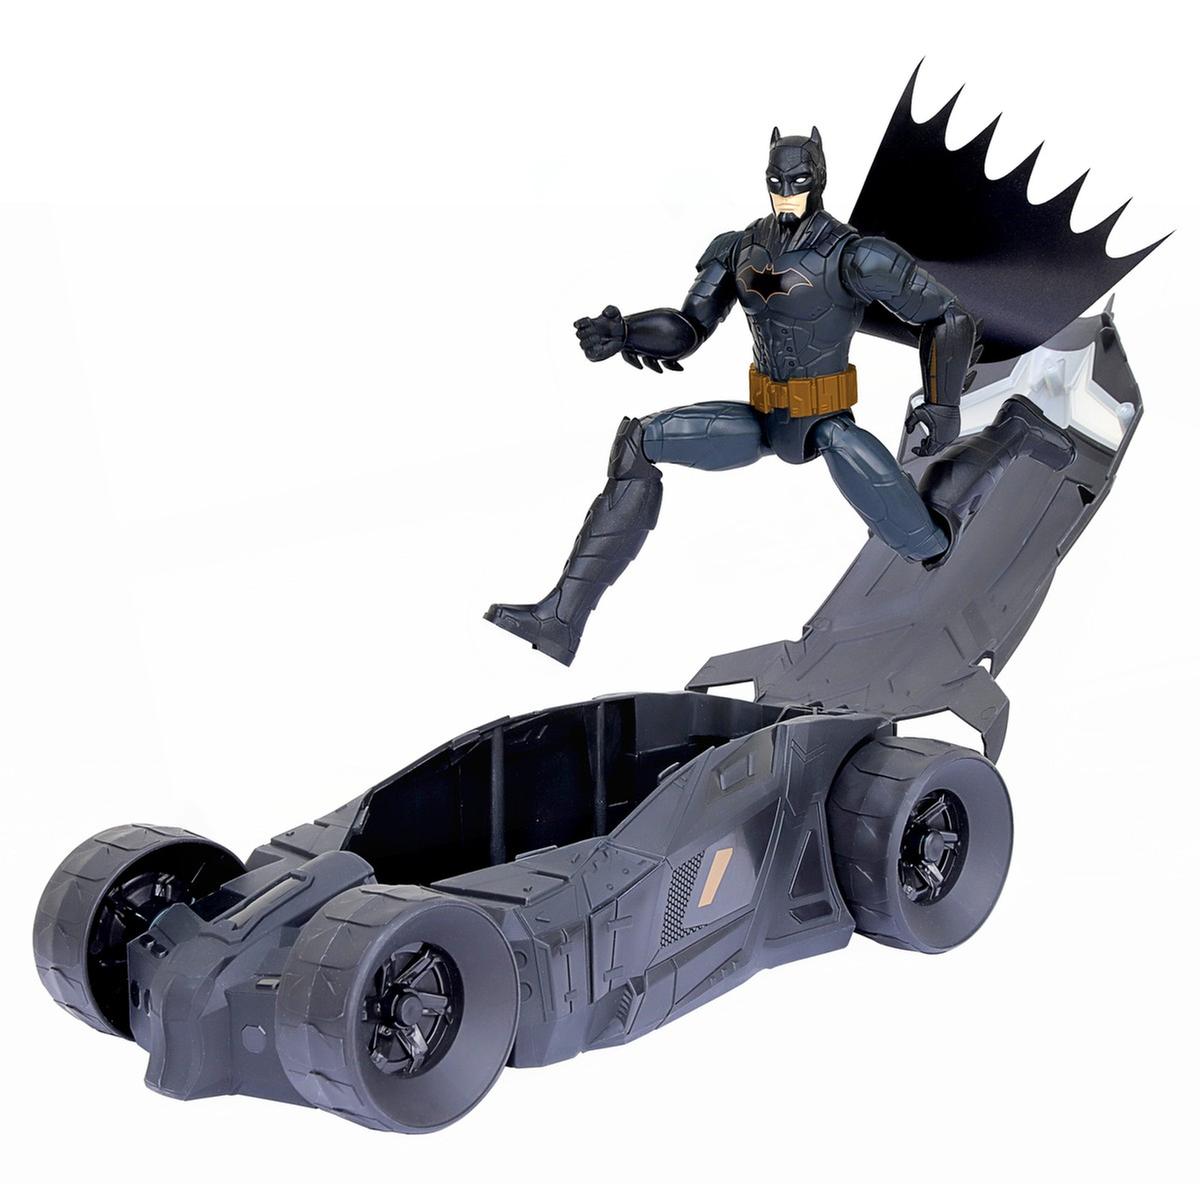 Dc comics - Batman - Set Batimóvil y figura de acción de Batman 30 cm ㅤ, Dc